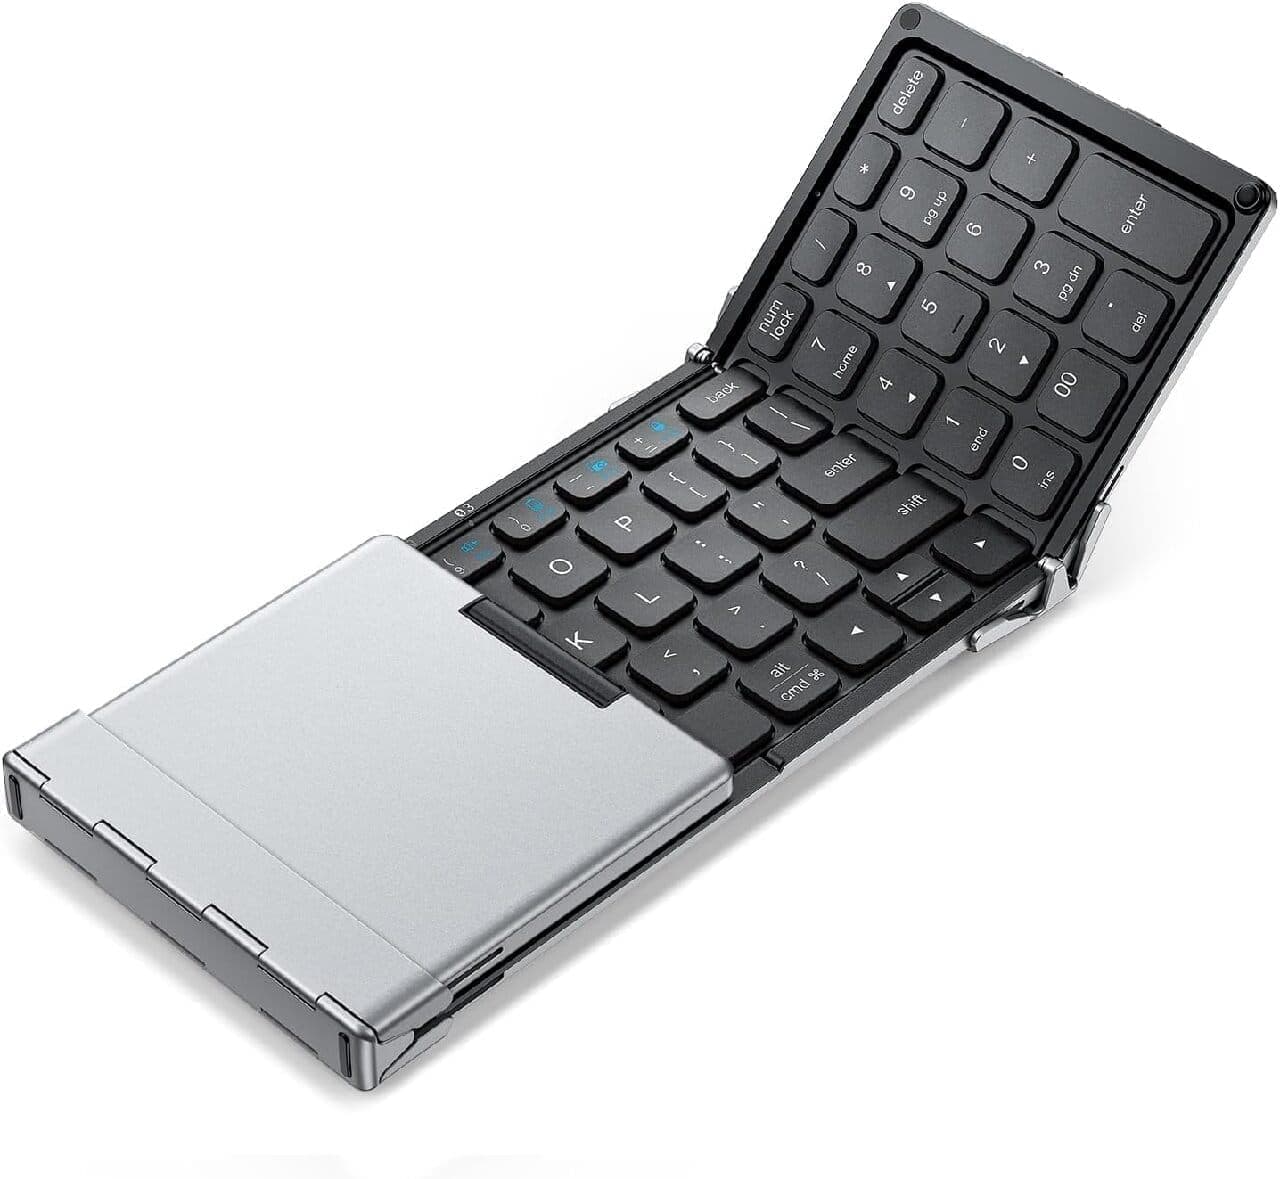 iClever 折りたたみ式Bluetoothキーボード「IC-BK09」